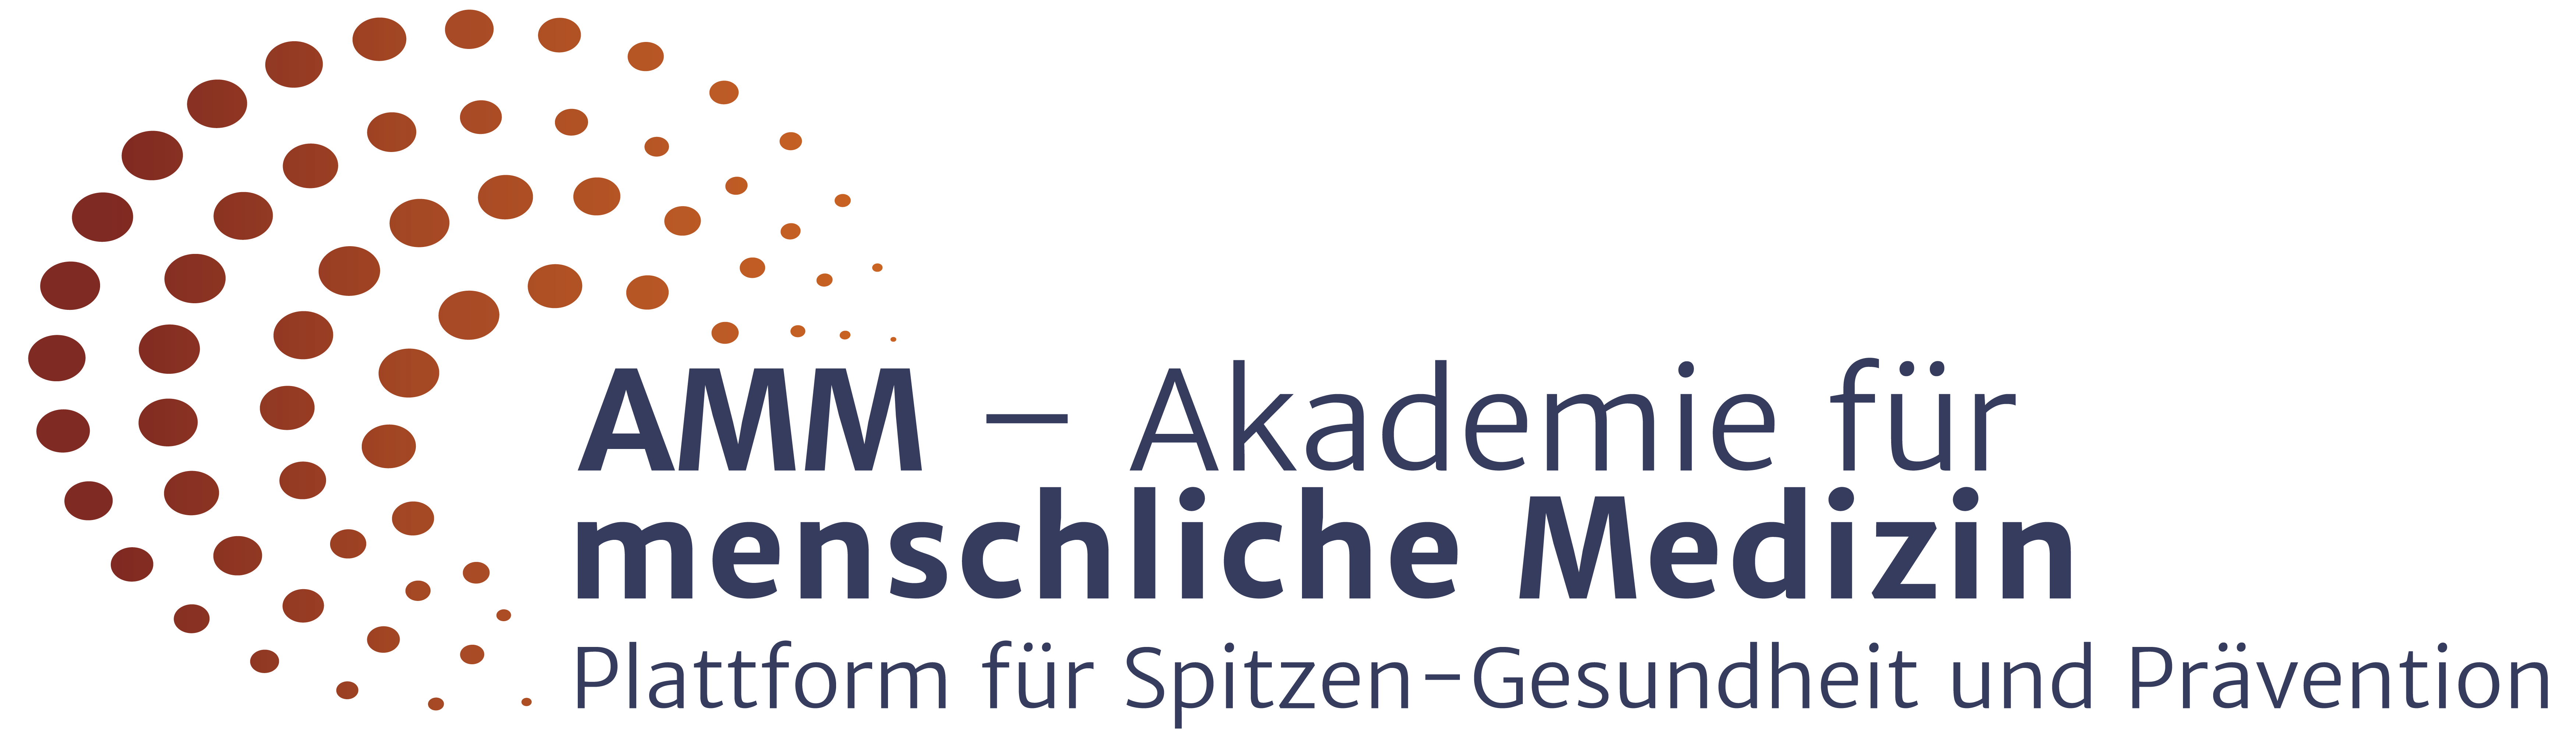 Logo der AMM – Akademie für menschliche Medizin | Plattform für Spitzen-Gesundheit und Prävention